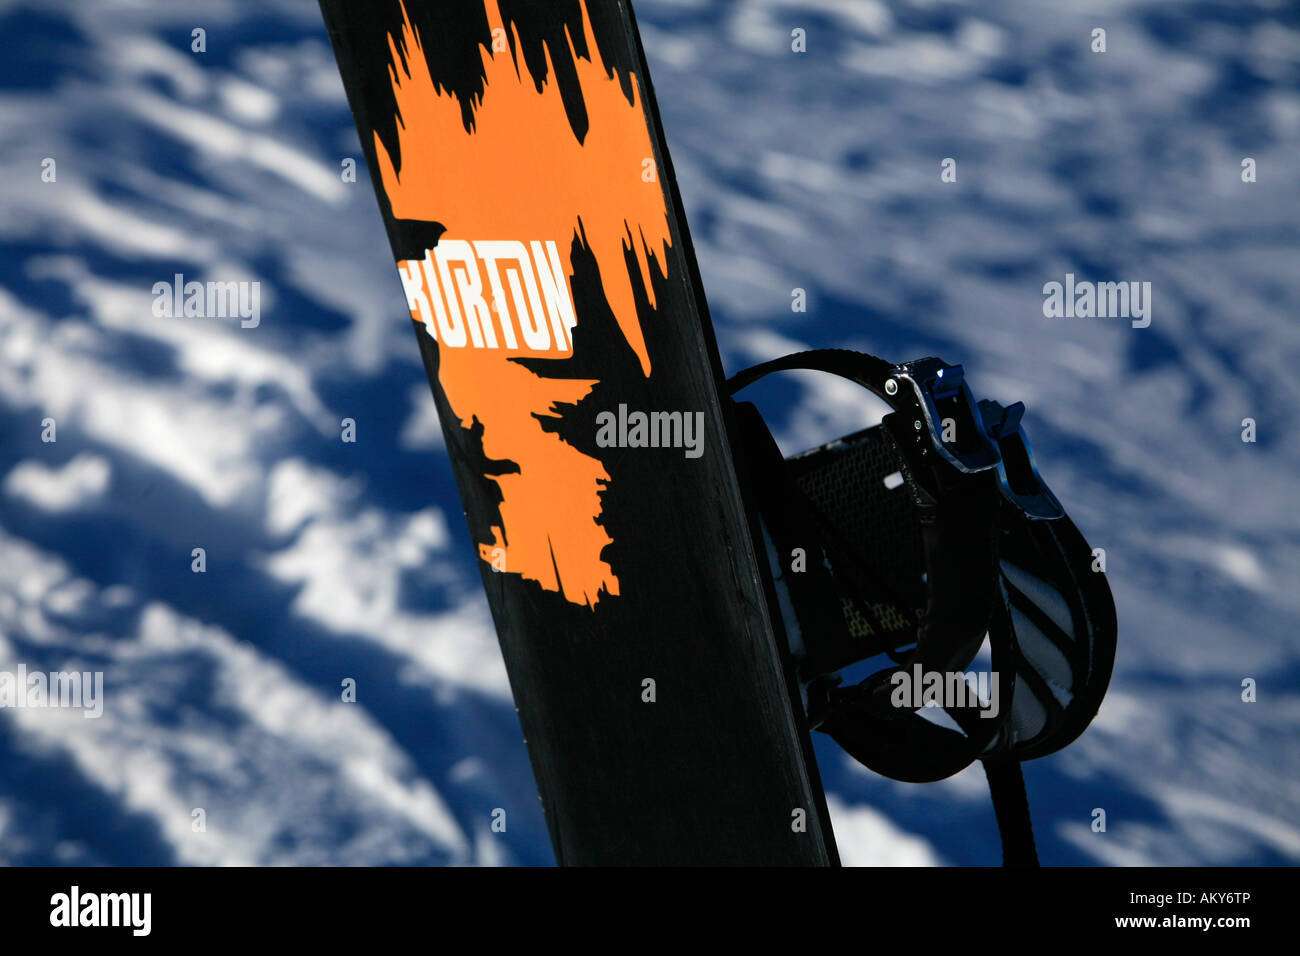 Burton snowboard immagini e fotografie stock ad alta risoluzione - Alamy